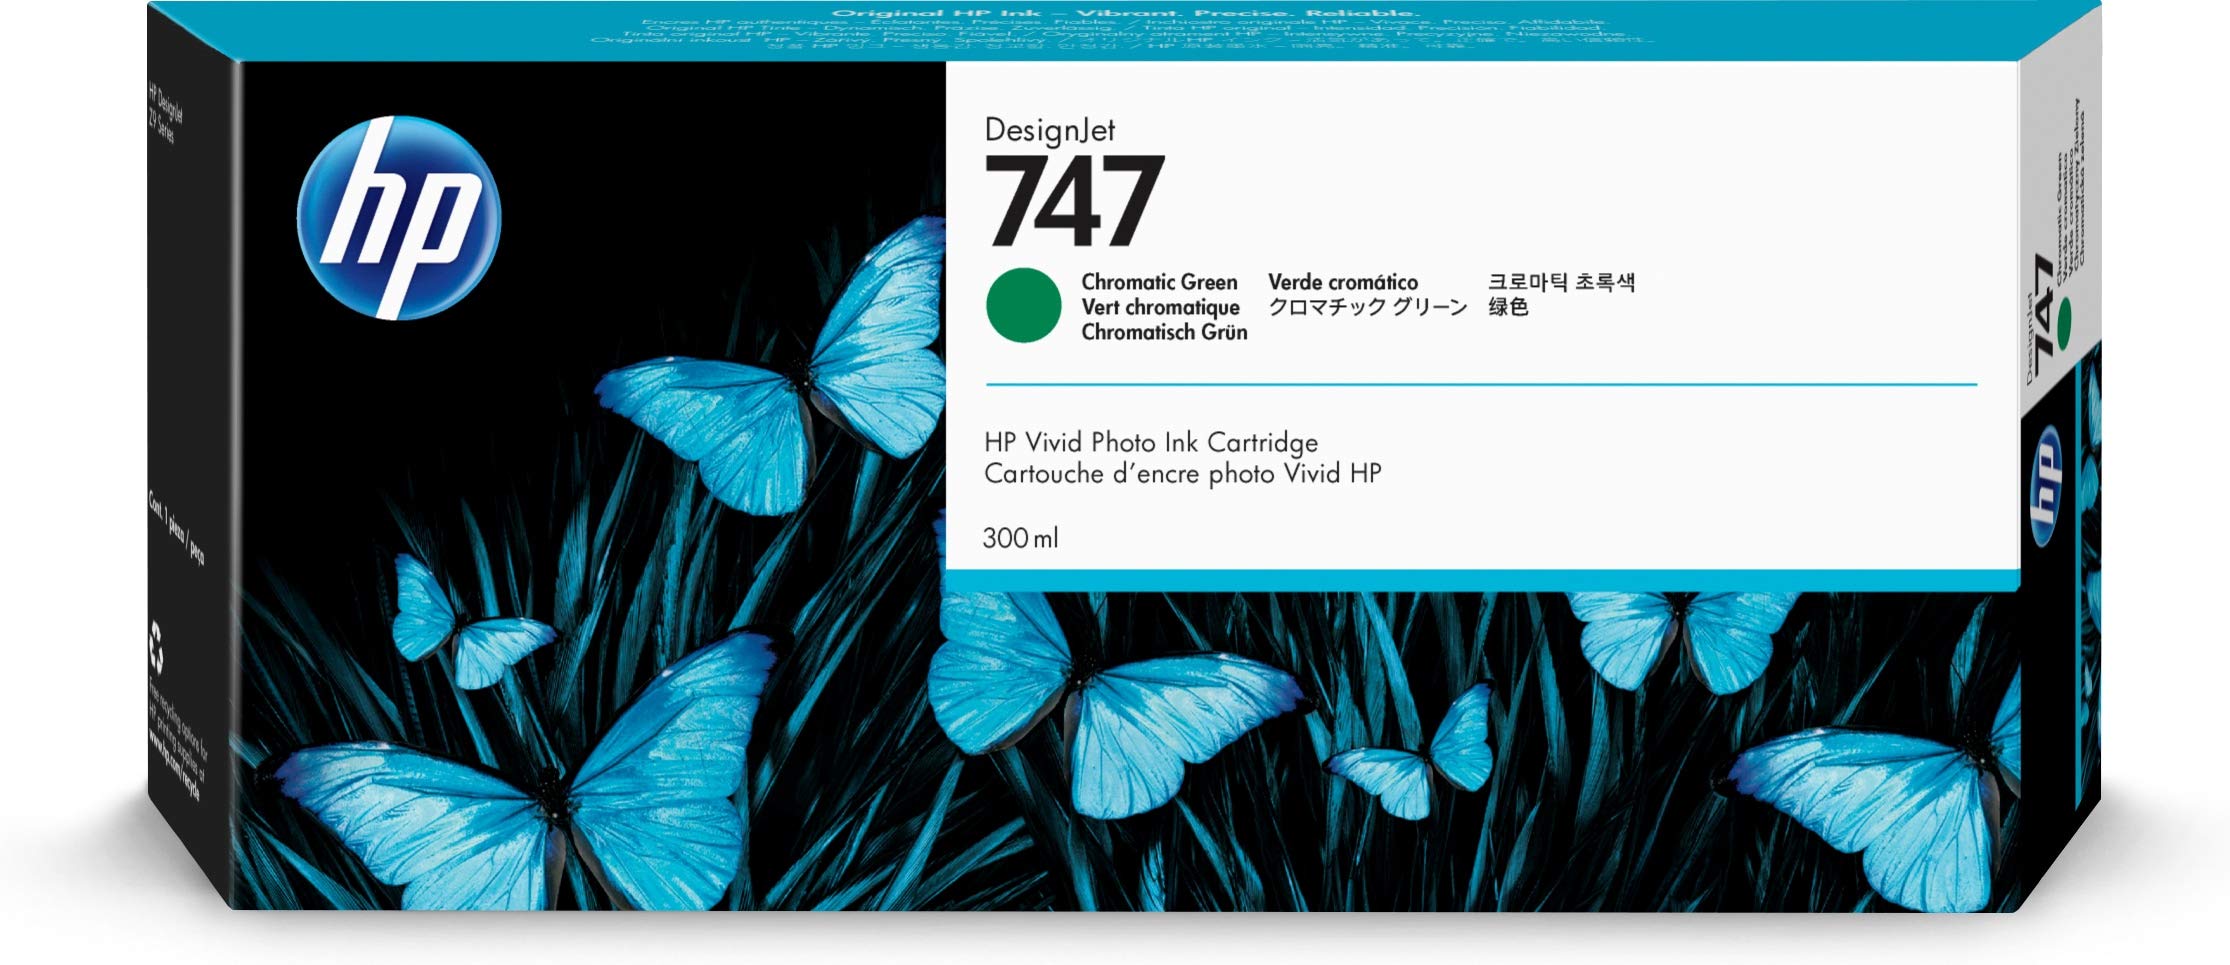 HP डिज़ाइनजेट Z9+ बड़े प्रारूप प्रिंटर के लिए 747 क्रोम...